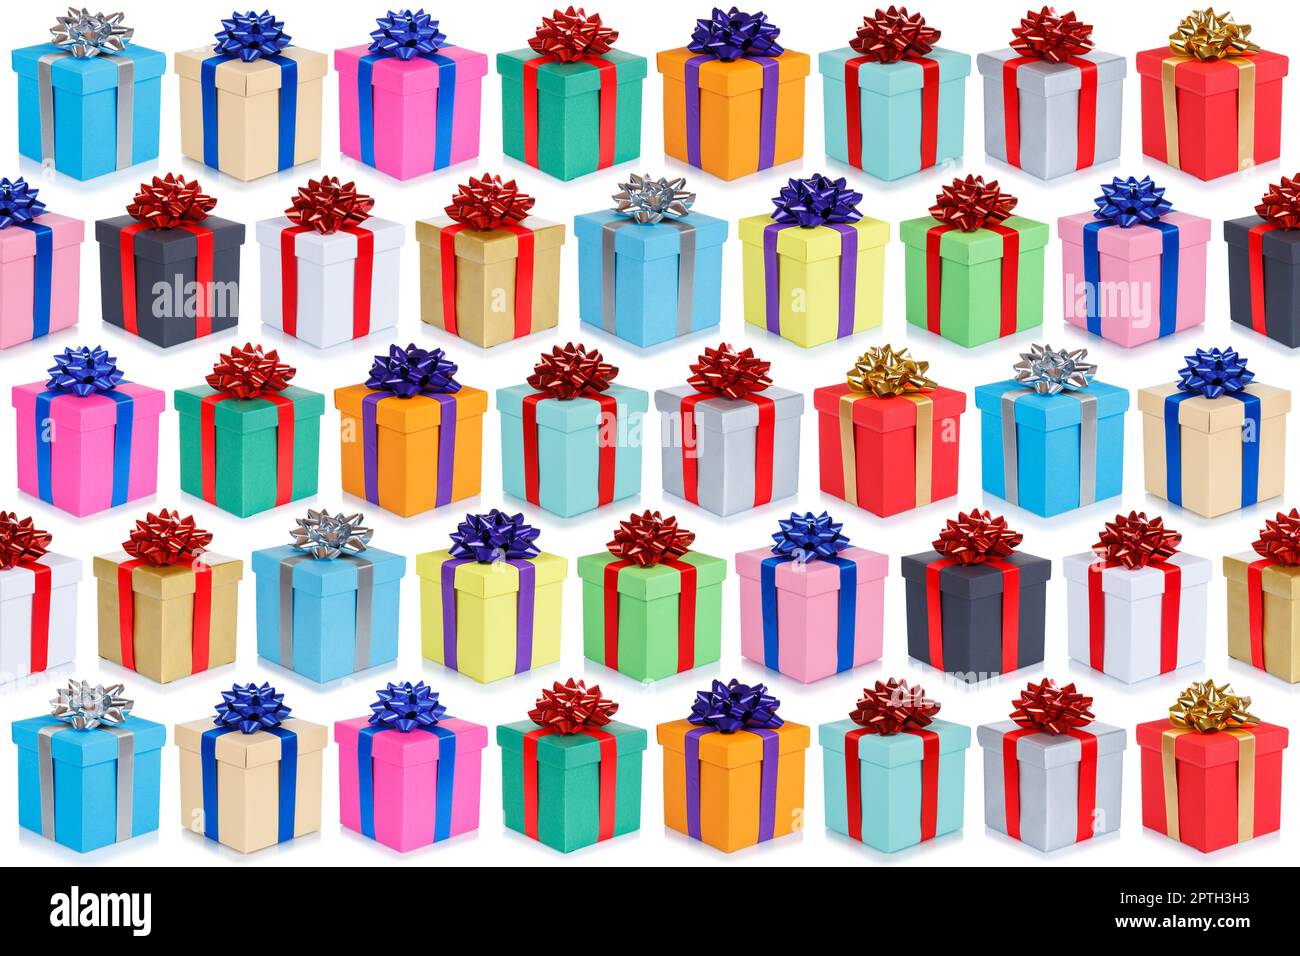 Weihnachten Geschenke Kollektion Hintergrund Geschenke Geburtstagsgeschenk Geschenk isoliert auf einem weißen Hintergrund Stockfoto